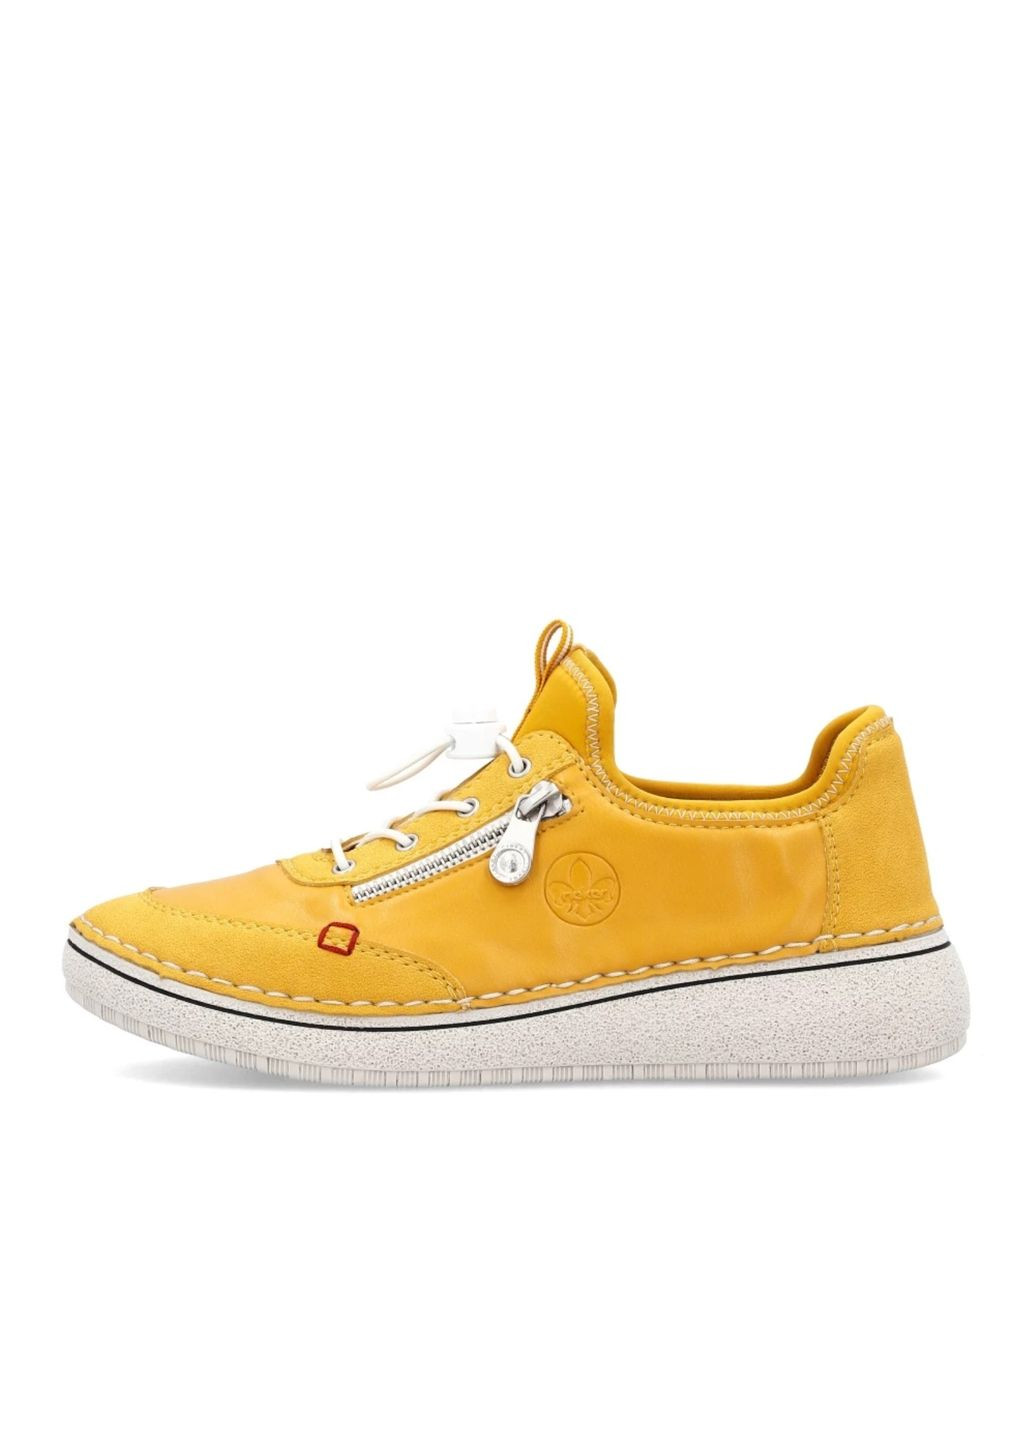 Жовті всесезонні кросівки (р) екошкіра/текстиль 0-1-1-50962-68 Rieker